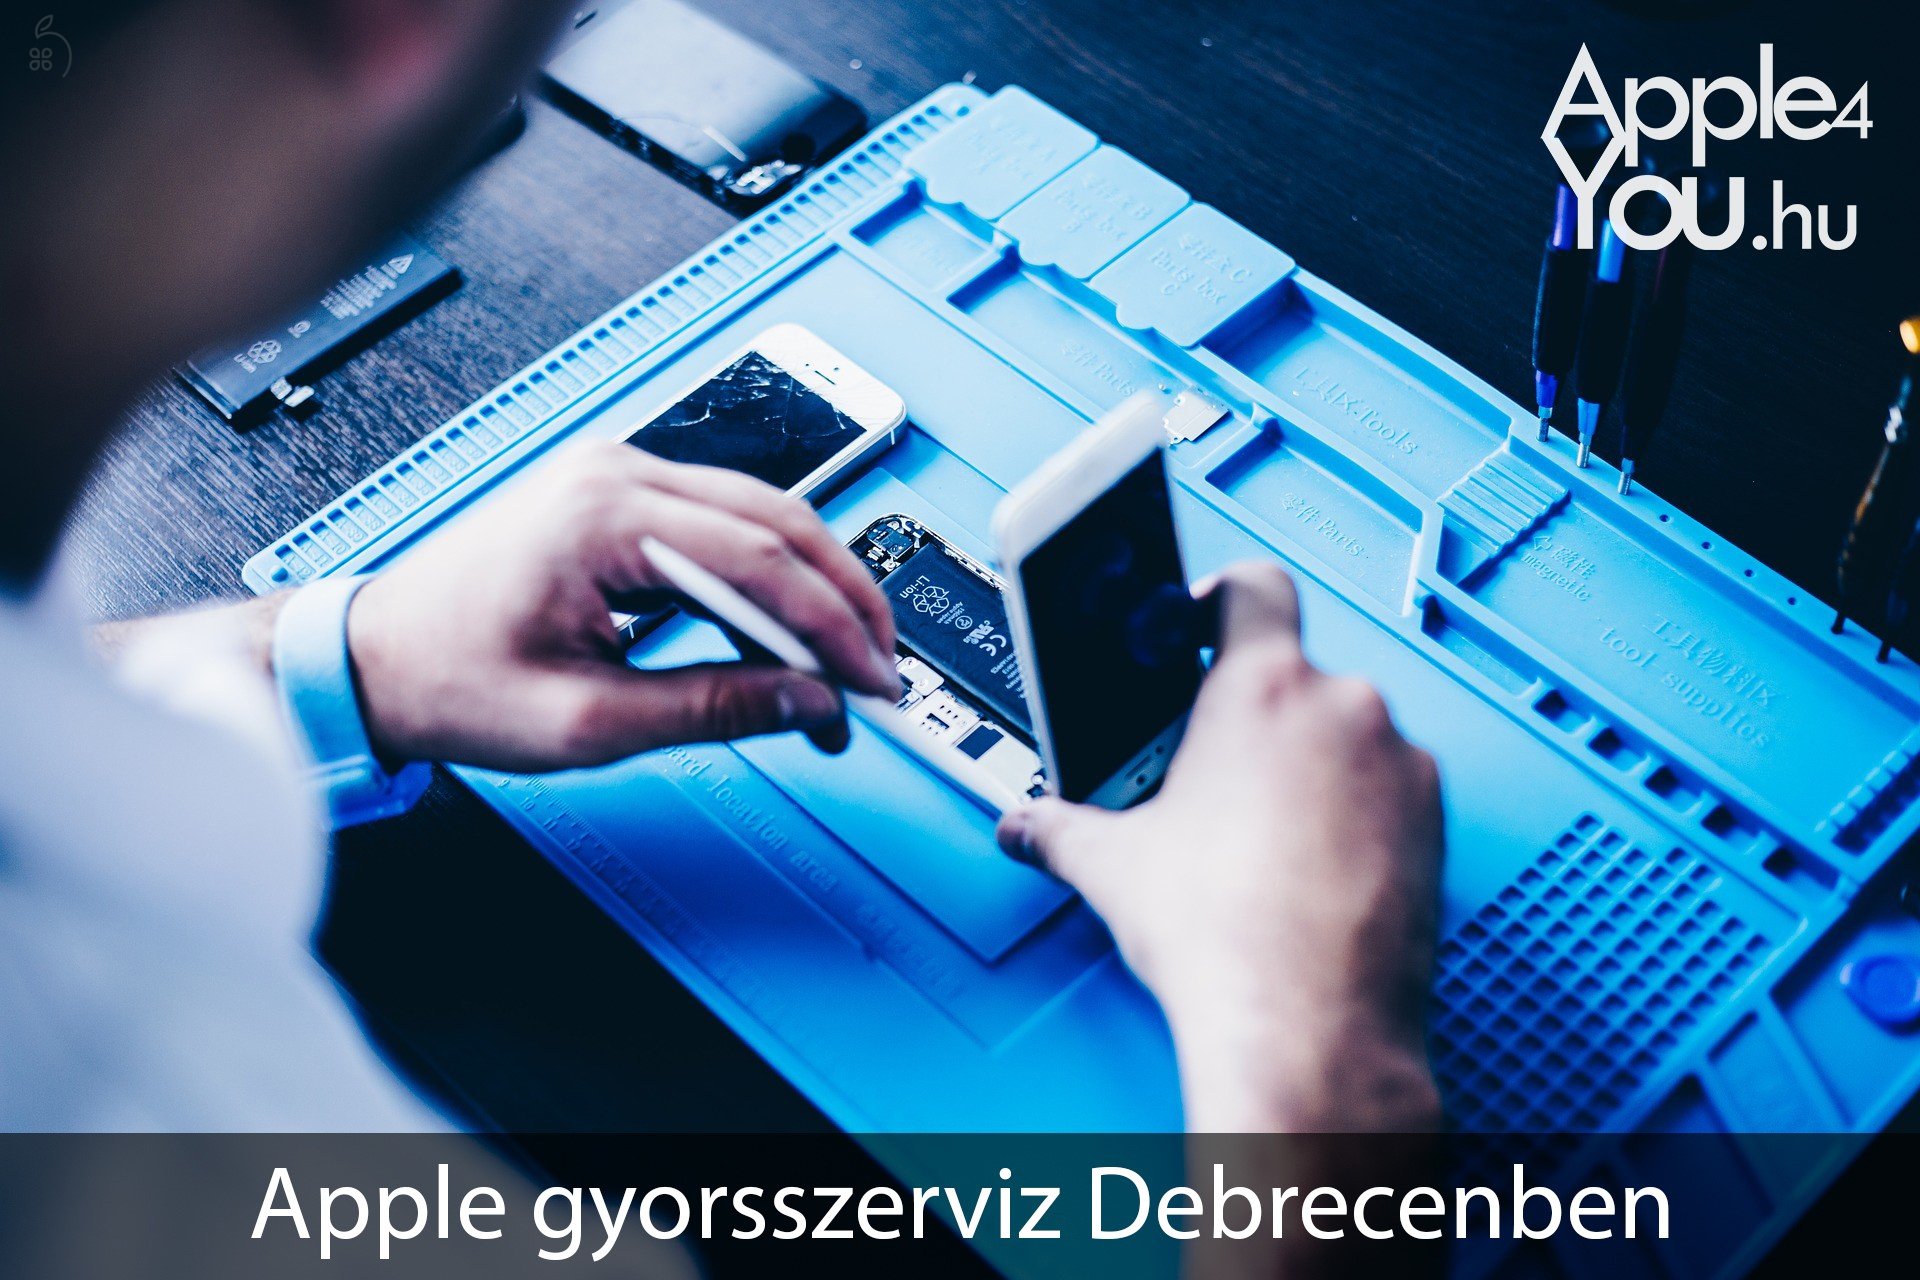 Apple4You! iMac Gyorsszerviz Debrecenben!